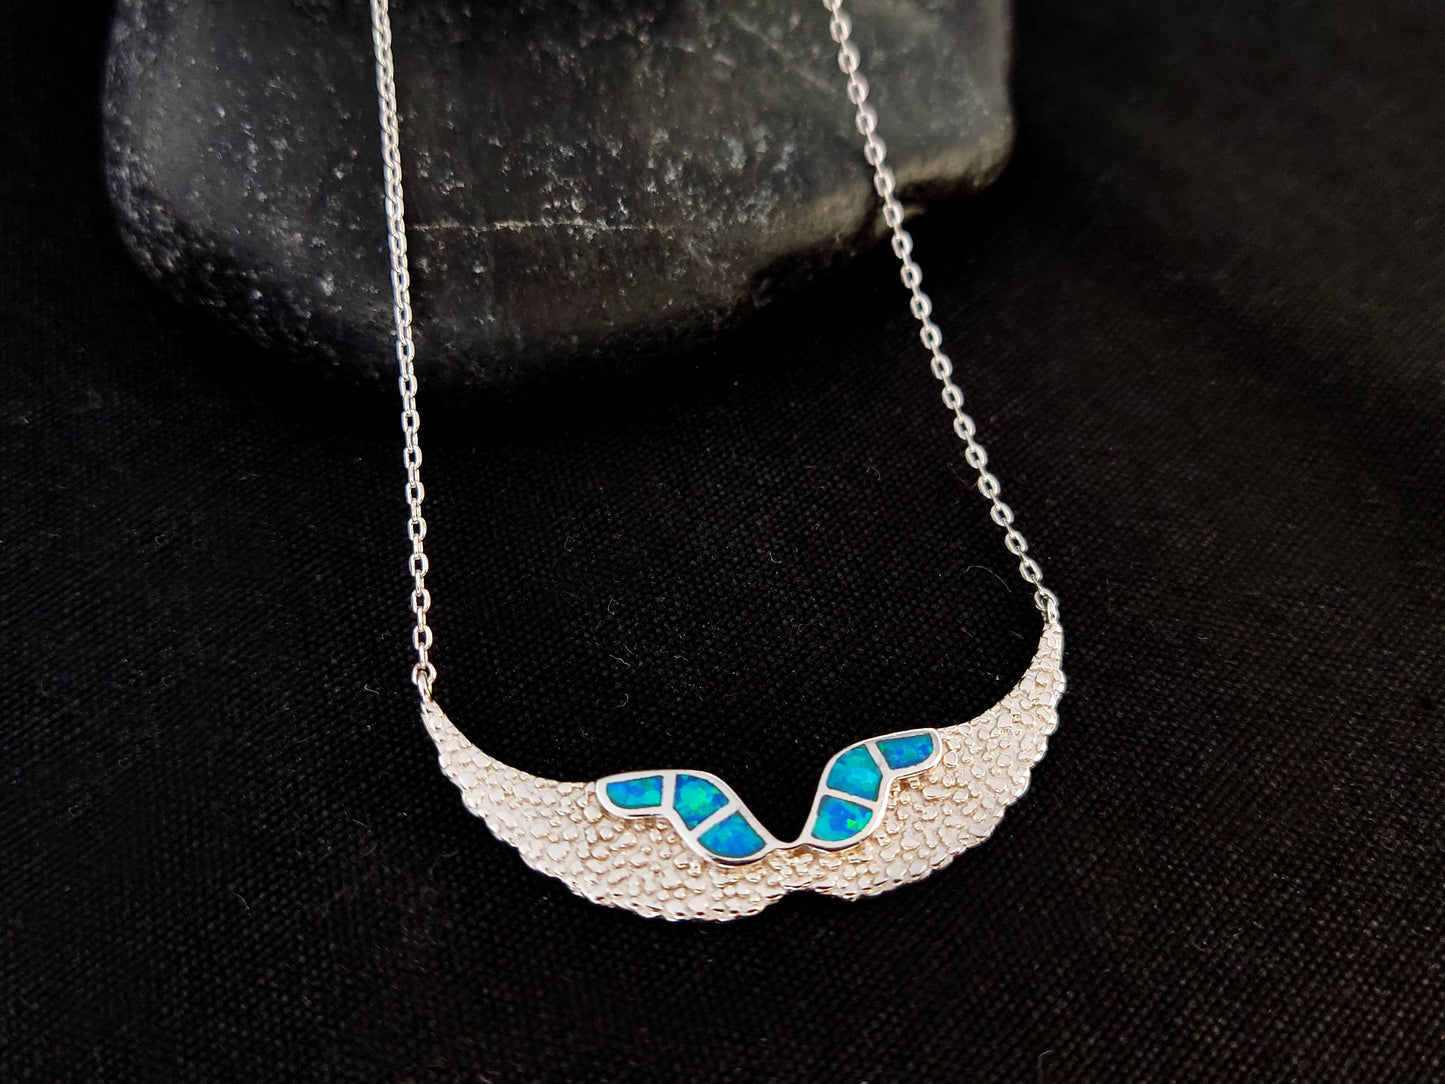 Sterling Silver 925 Fire Rainbow Blue Opal Angel Wings Chain Pendant Necklace, Griechischer Opal Kette, Bijoux Grecque, Greek Jewelry